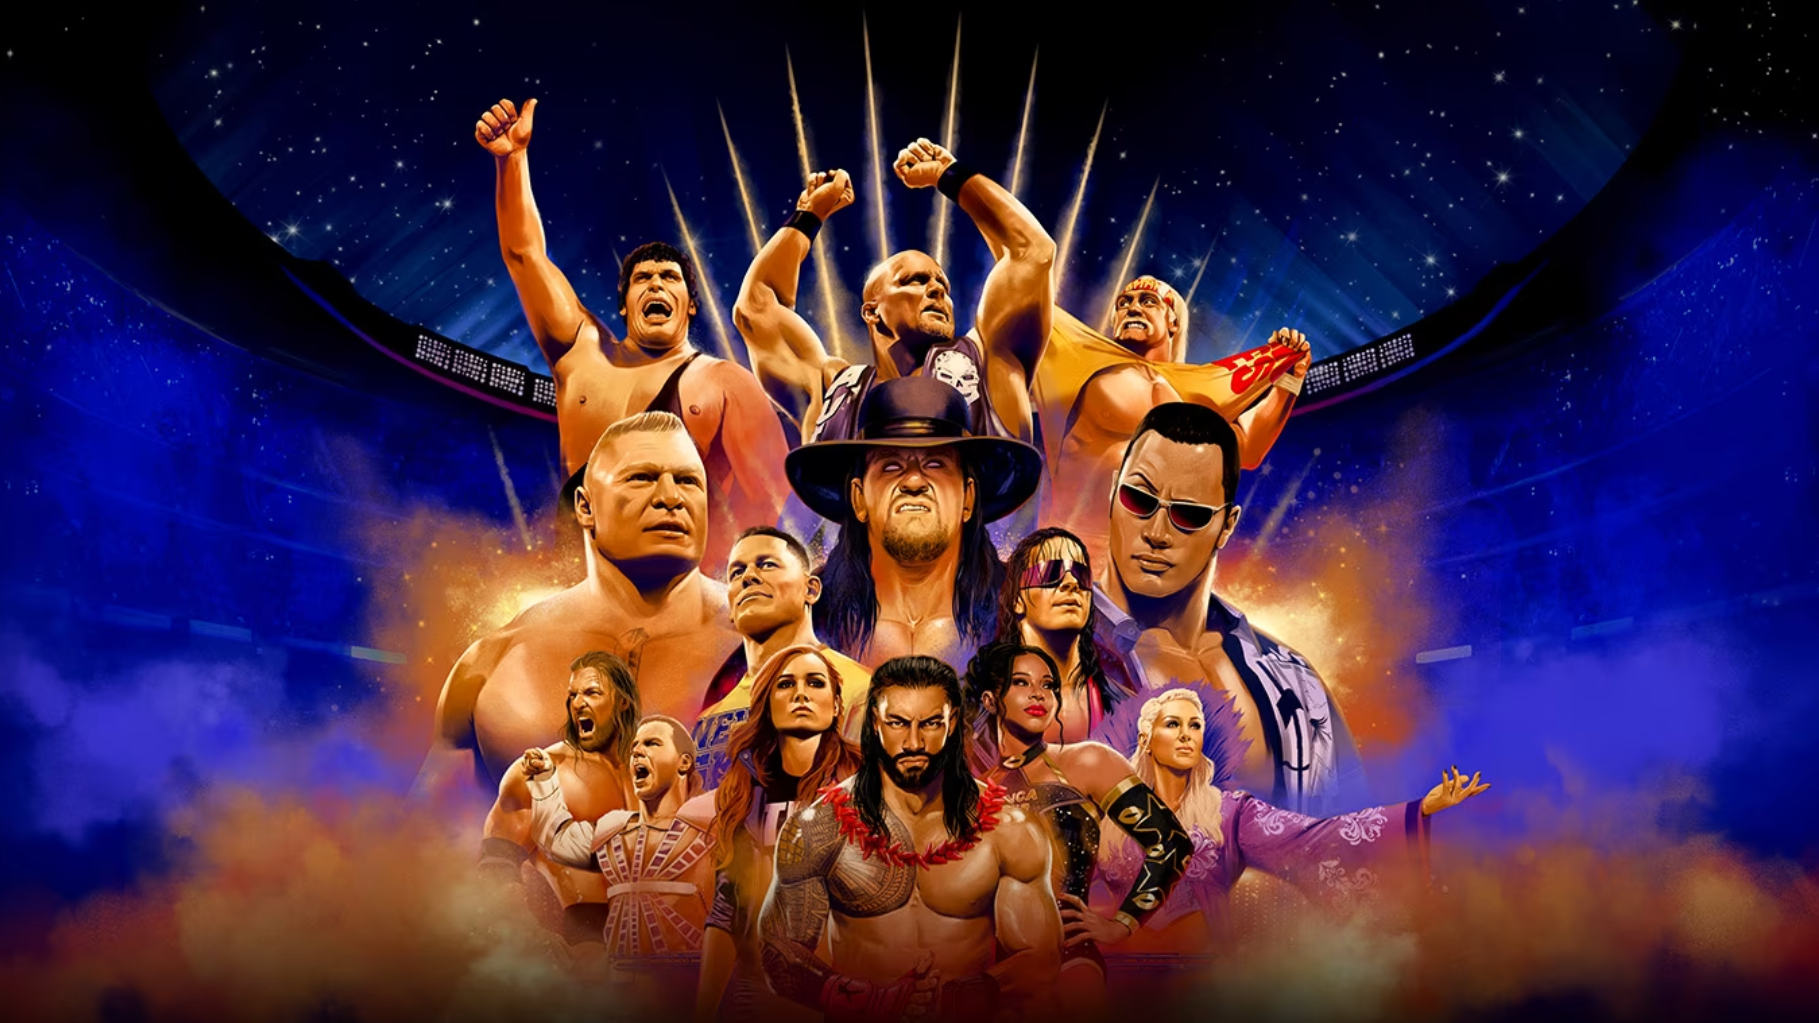 Free download WWE Wallpaper Randy Orton 1600x1200 75731 KB [1600x1200 ...